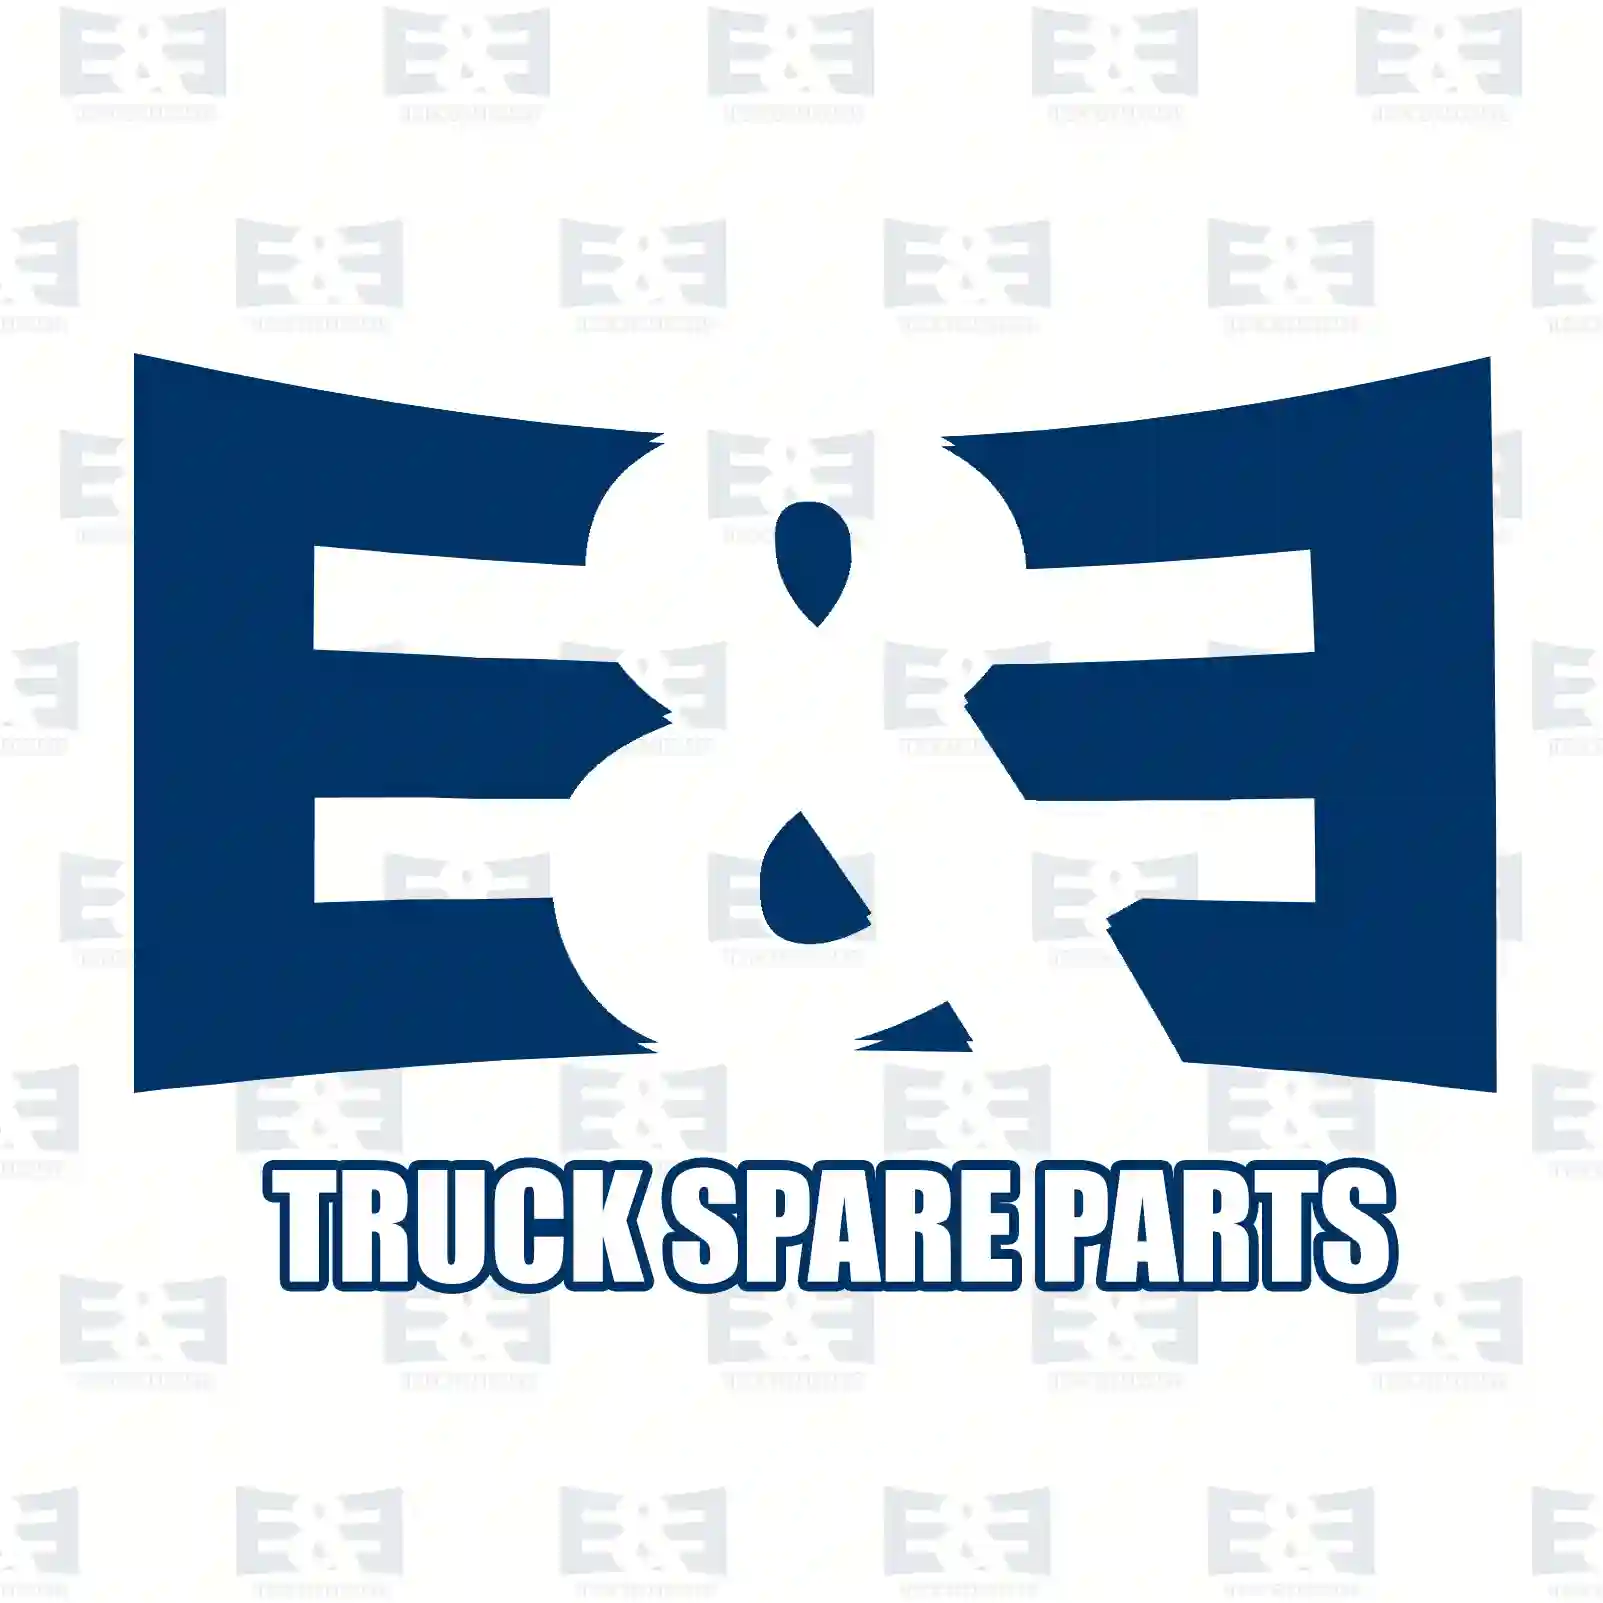 Brake disc, 2E2296292, 2D0615601B, 5103606AA, 5103606AA, 9044230112, 9044230212, 9044230312, 9044230412, 9044230512, 2D0615601B, 2D0615601B, 2D0615601B ||  2E2296292 E&E Truck Spare Parts | Truck Spare Parts, Auotomotive Spare Parts Brake disc, 2E2296292, 2D0615601B, 5103606AA, 5103606AA, 9044230112, 9044230212, 9044230312, 9044230412, 9044230512, 2D0615601B, 2D0615601B, 2D0615601B ||  2E2296292 E&E Truck Spare Parts | Truck Spare Parts, Auotomotive Spare Parts